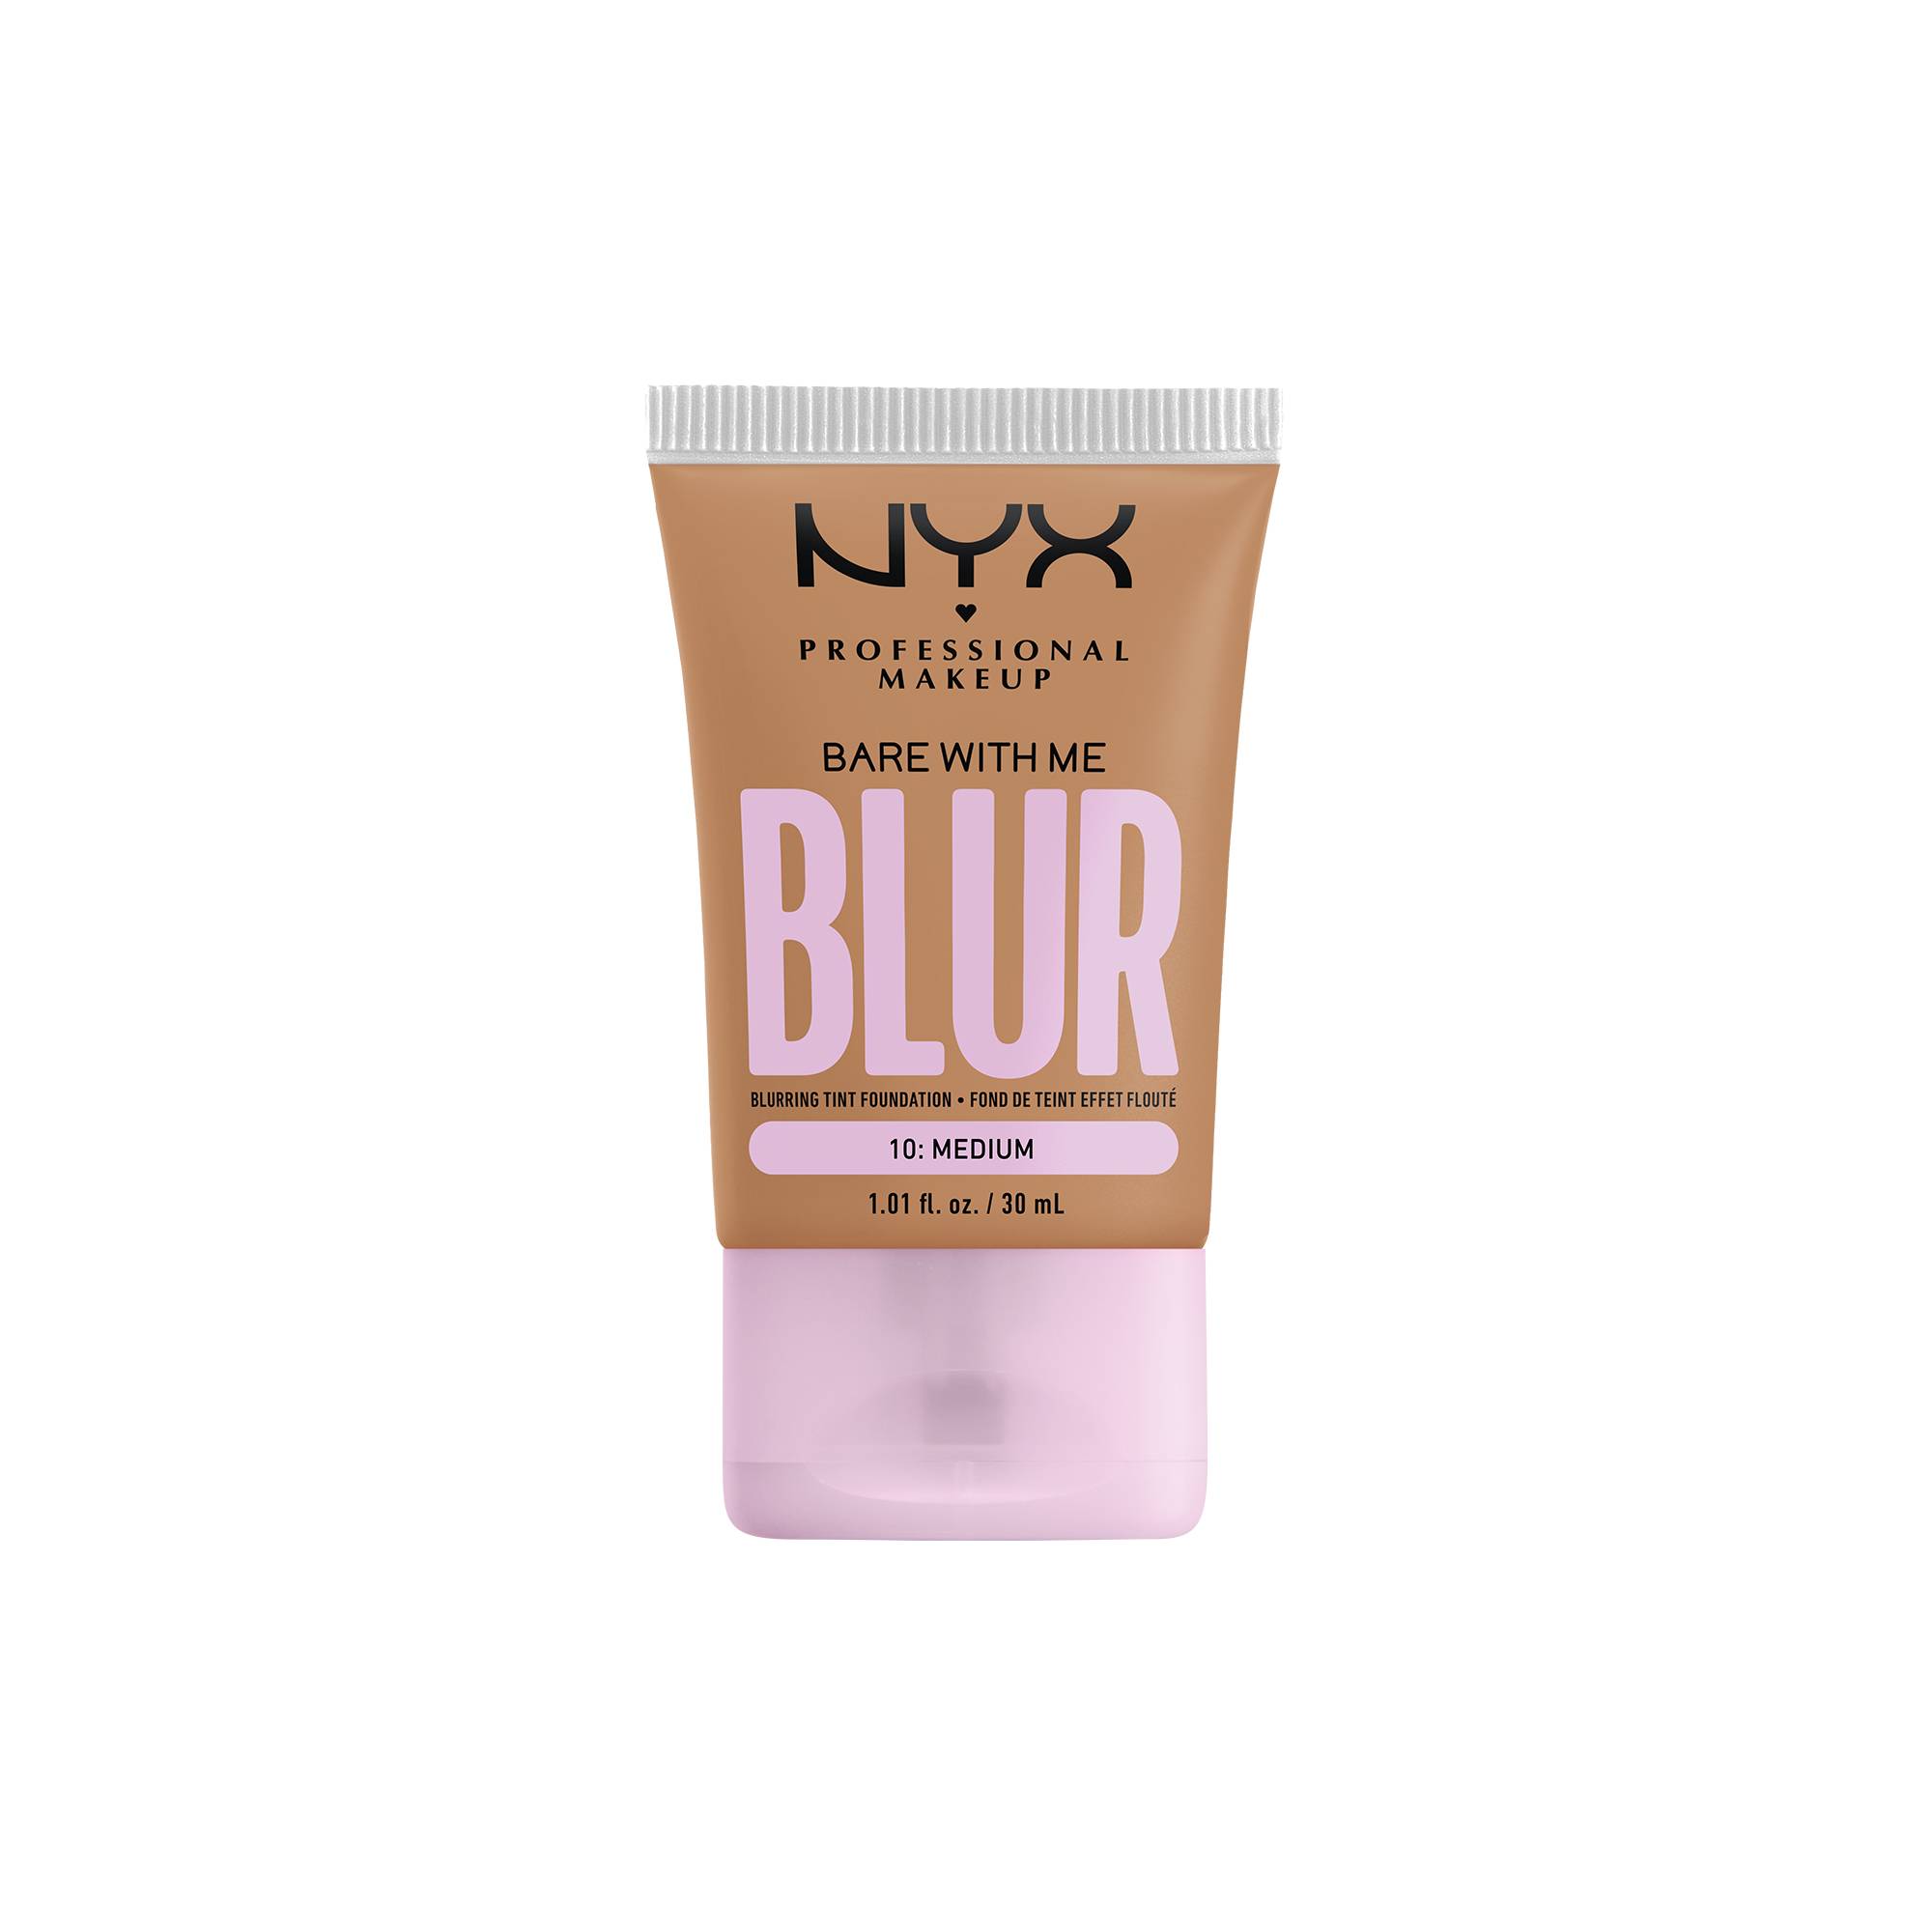 Fond de teint effet flouté Bare With Me Blur Medium de la marque NYX Professional Makeup - 1